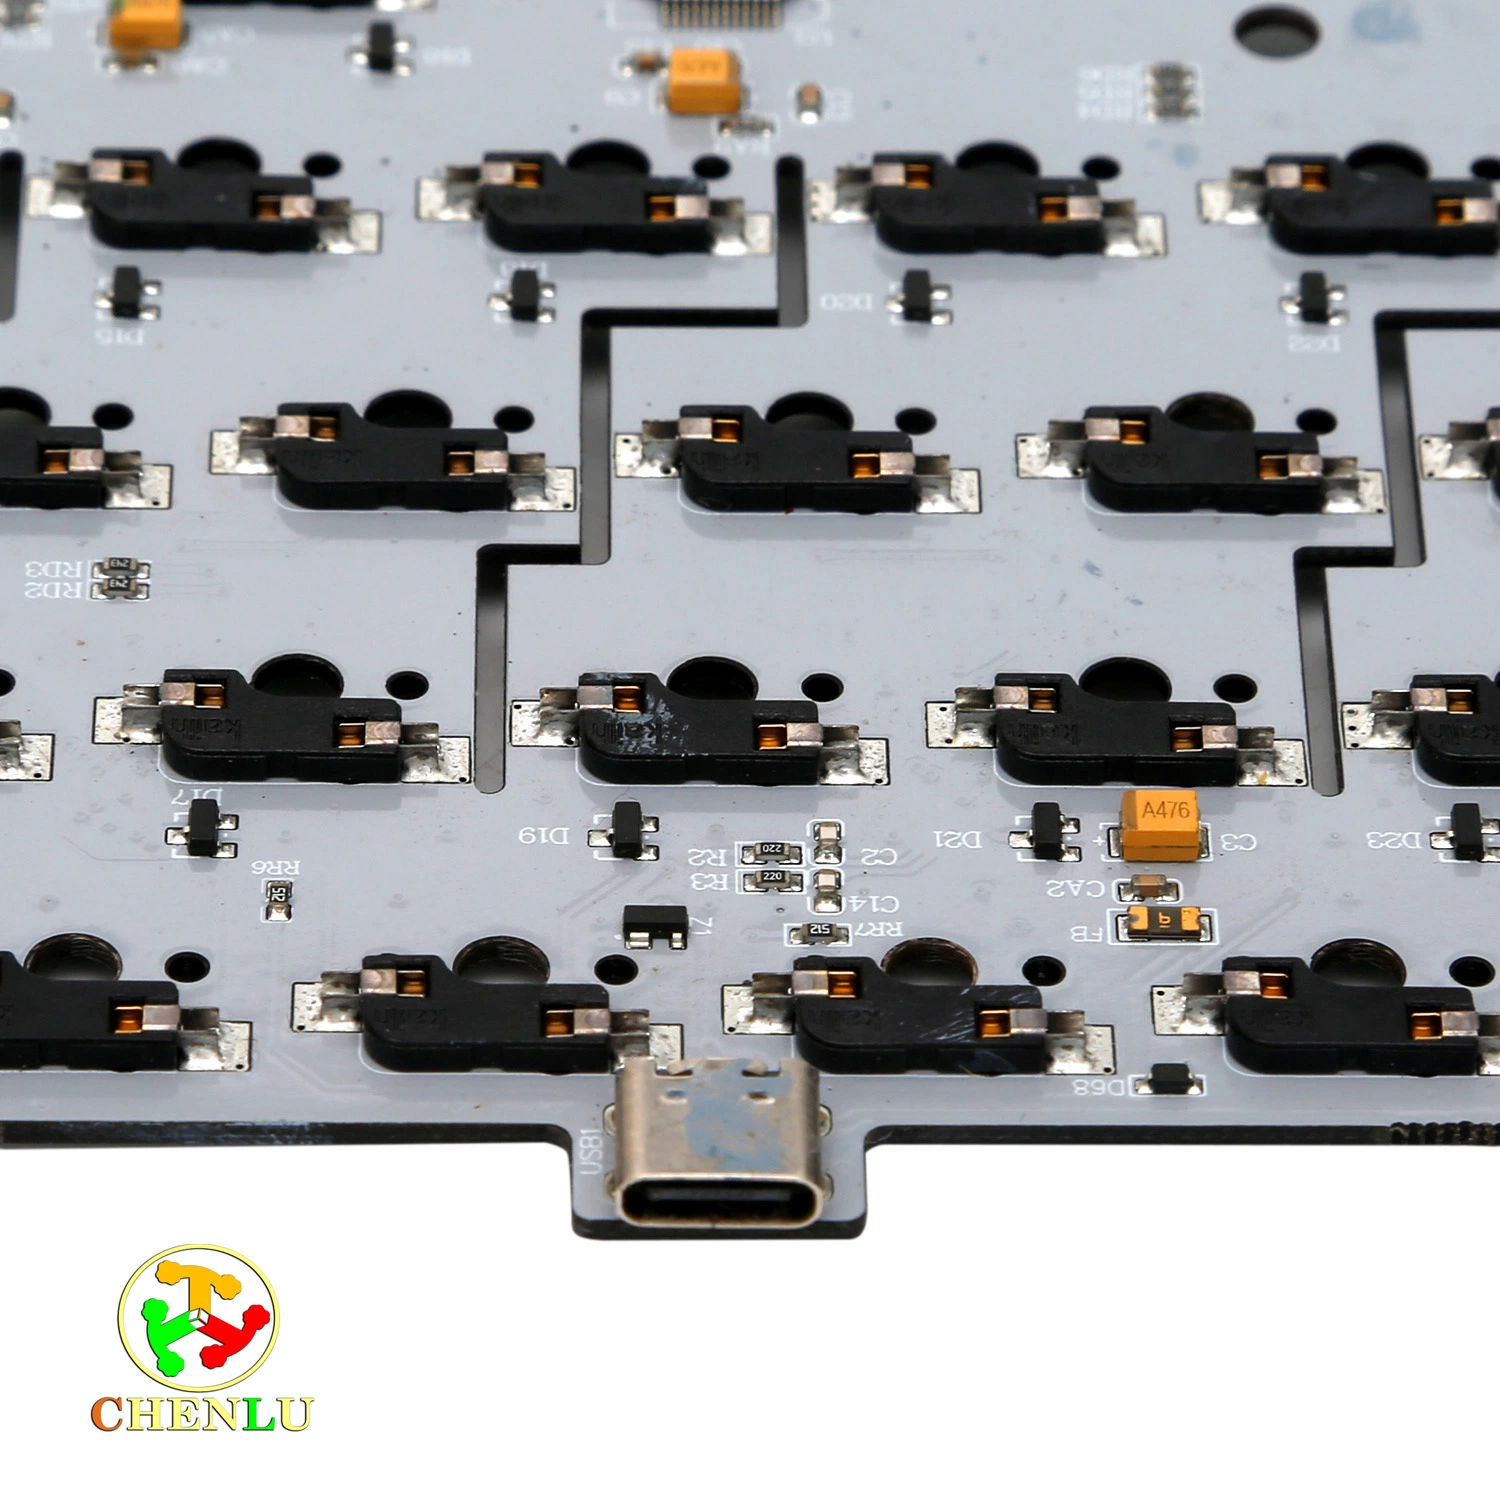 Acelerar o desenvolvimento de produtos eletrônicos com Prototipagem Rápida e Fabrico Rápido através de Prototipagem PCB e manufatura.